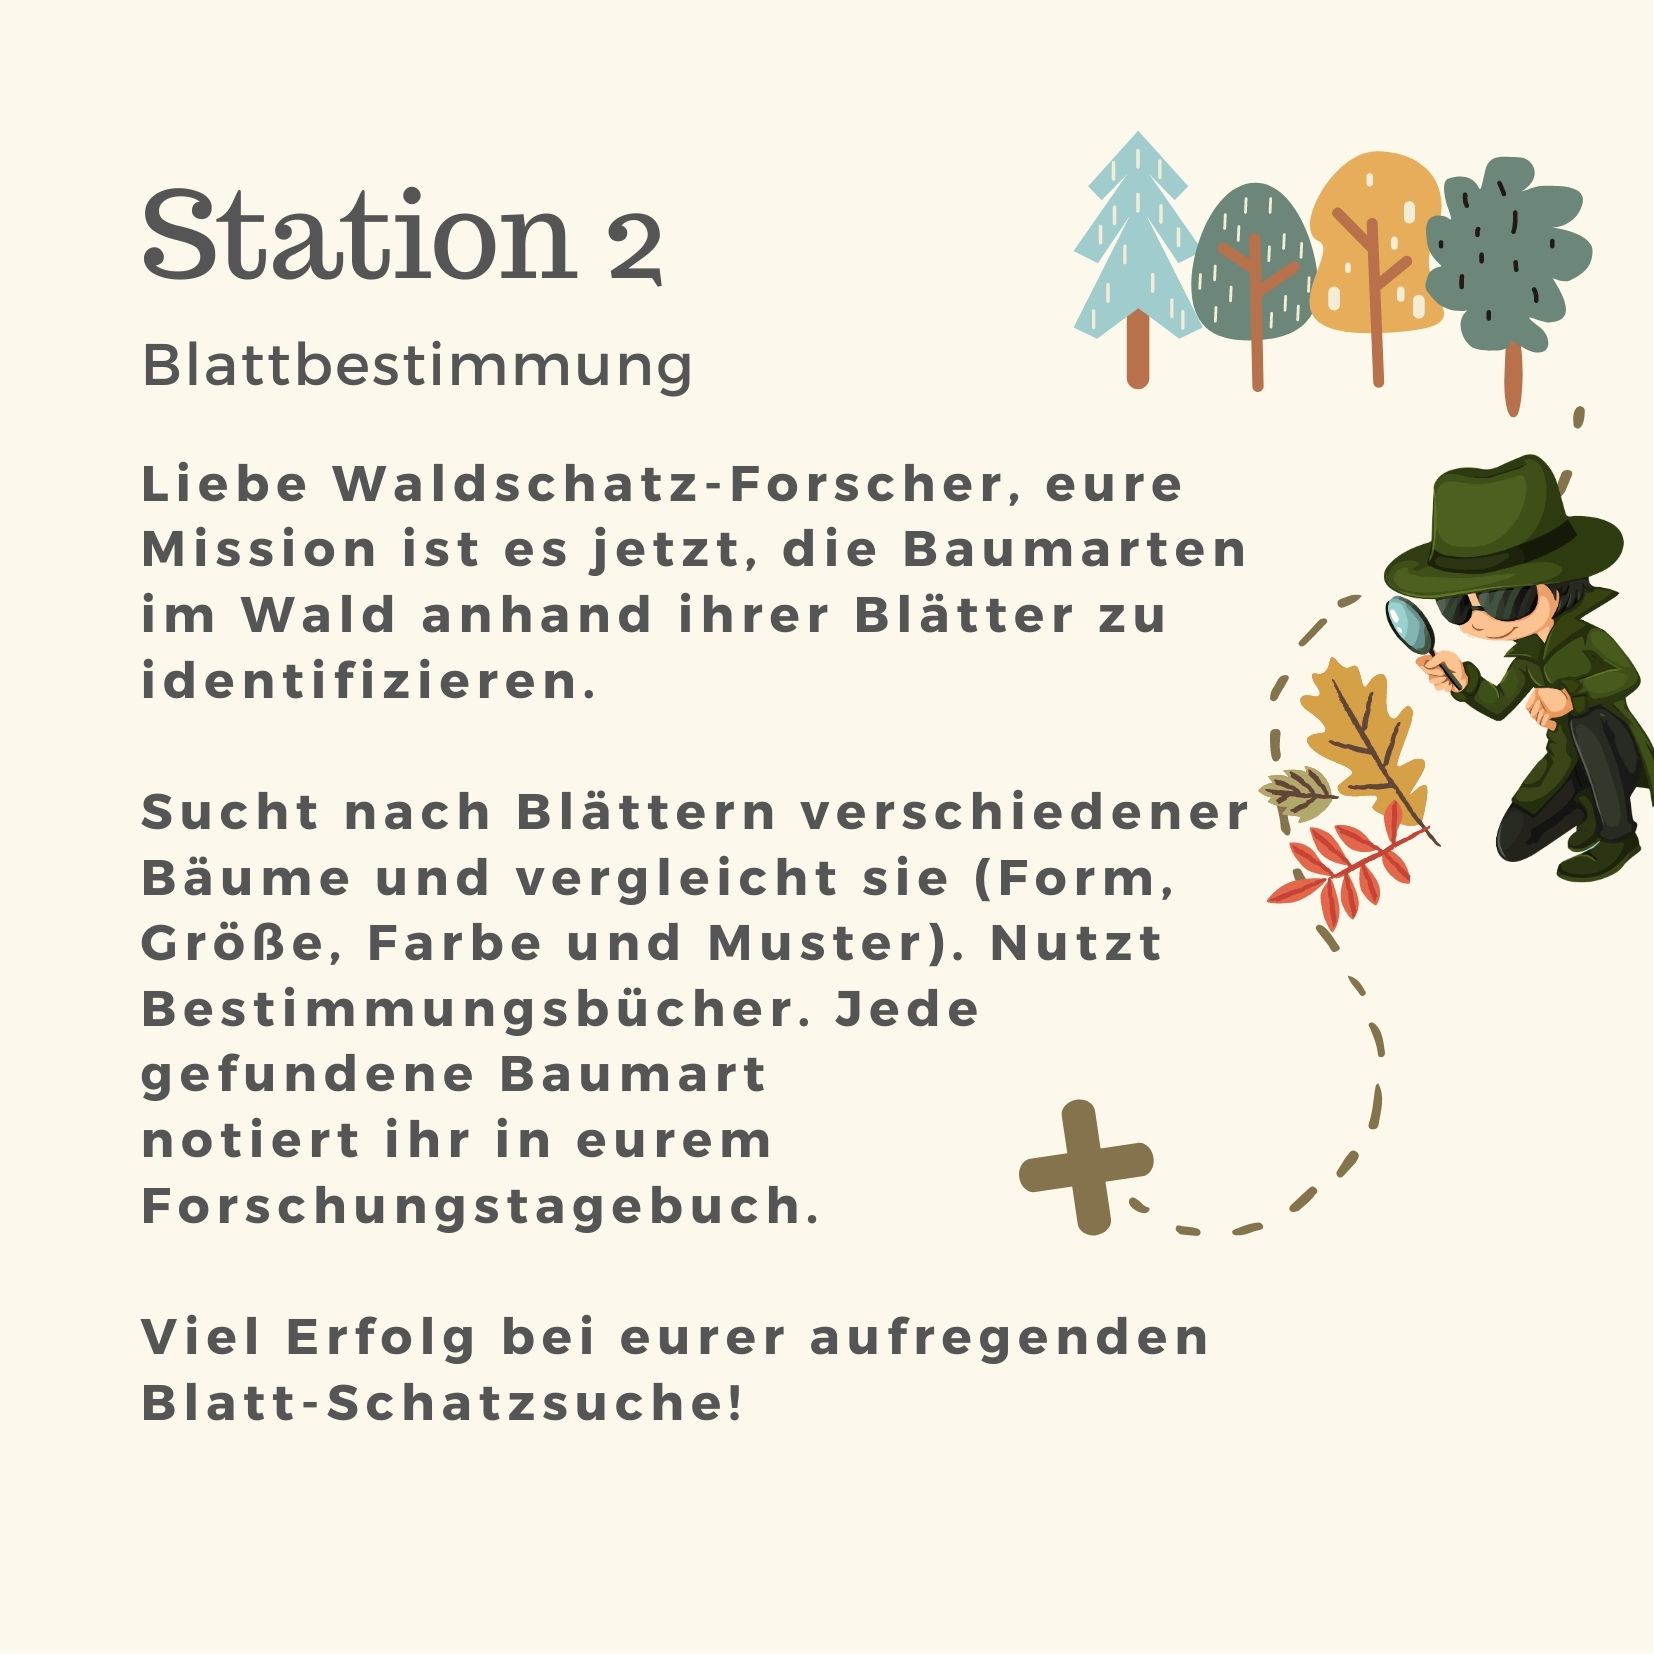 Station 2 - Blattbestimmung (Waldschatzsuche)